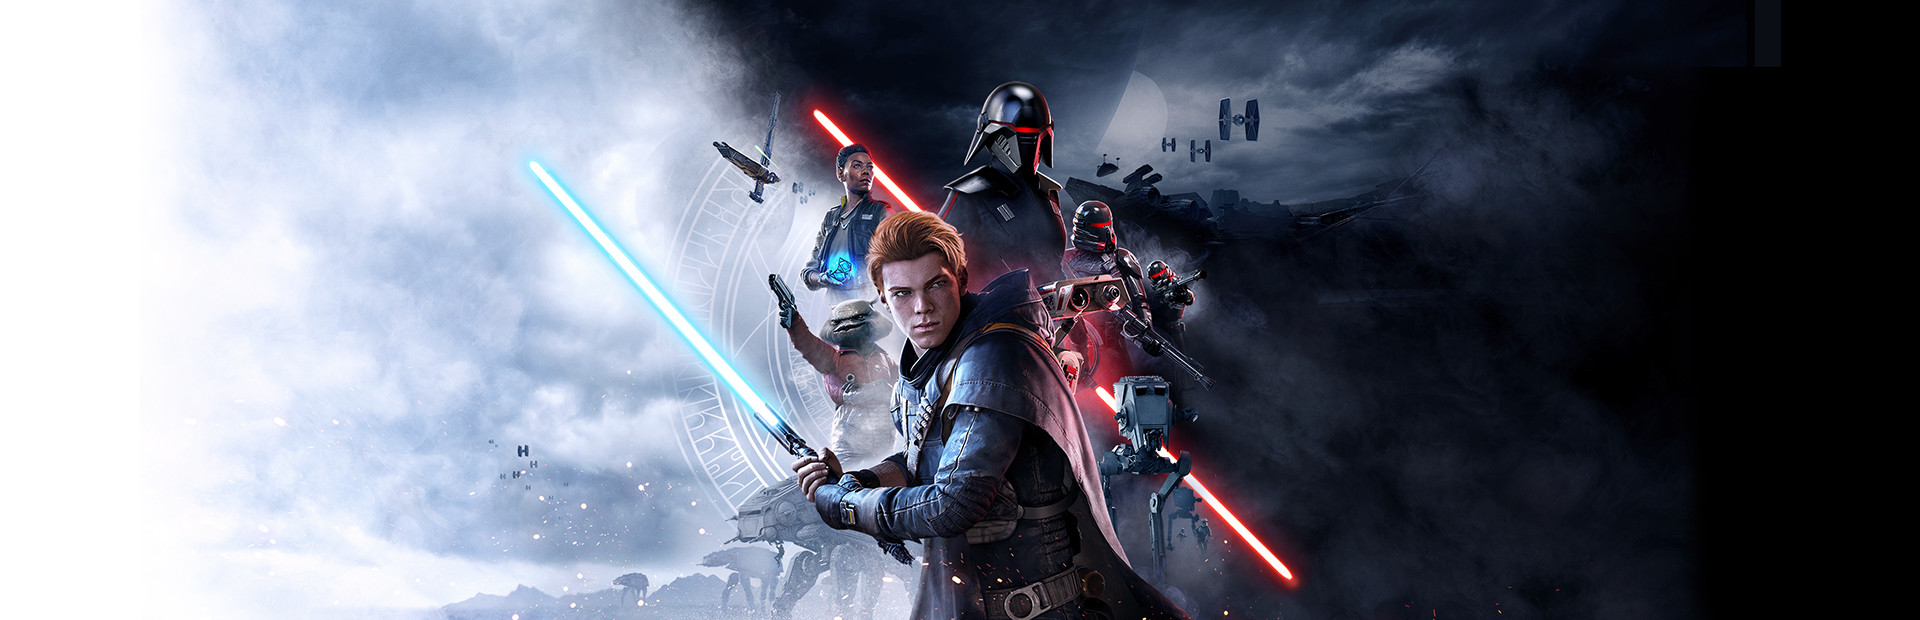 STAR WARS Jedi: Fallen Order™ cover image